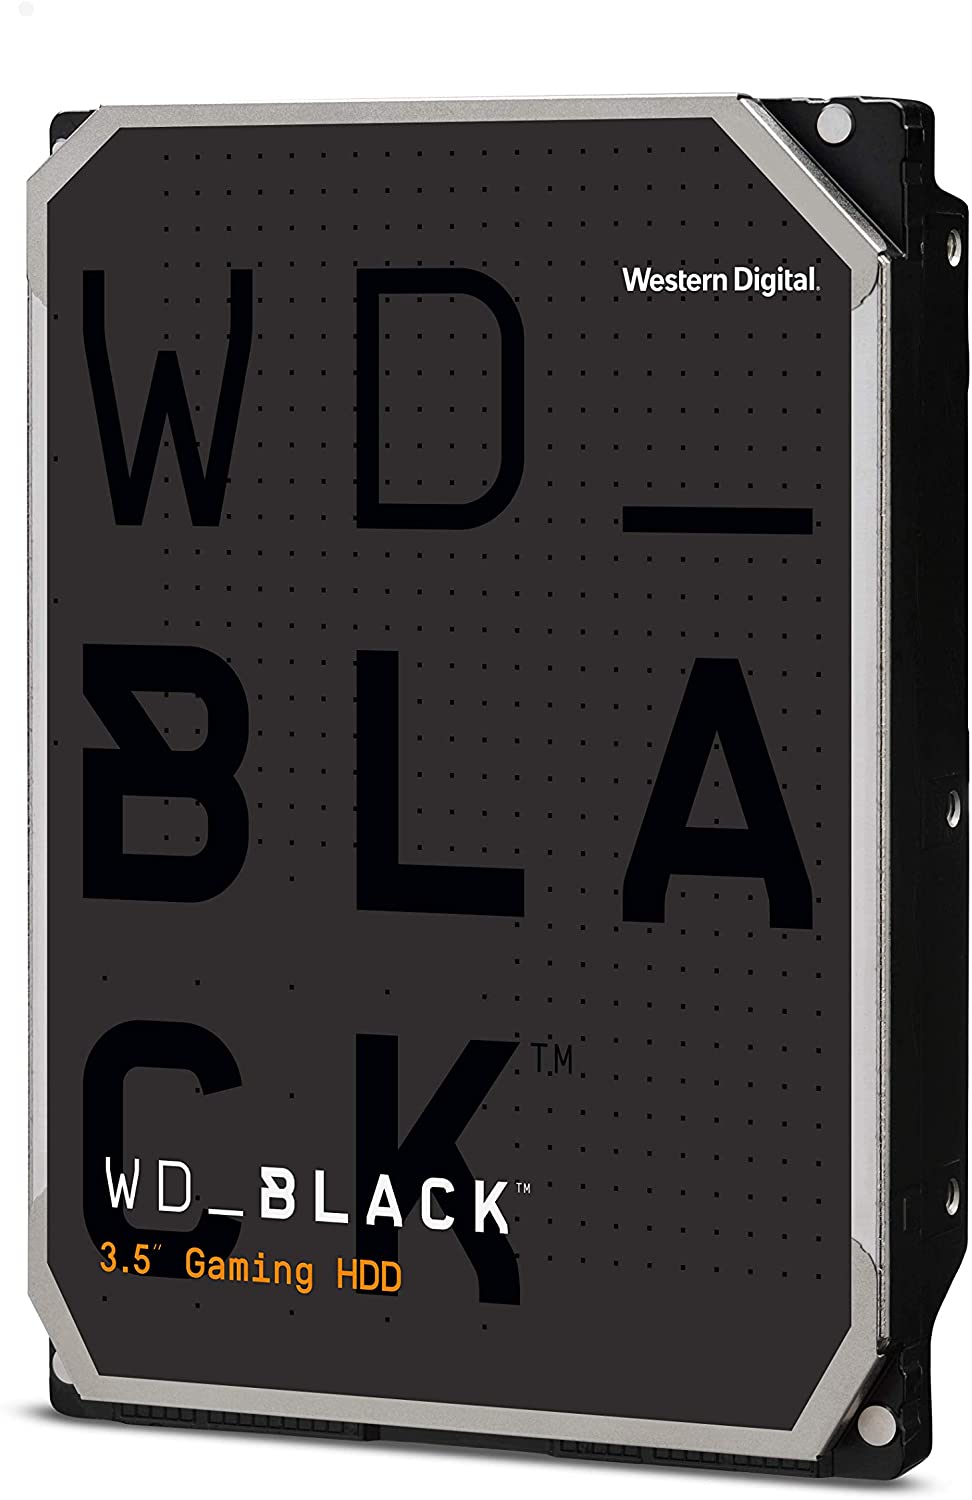 Western Digital 4TB WD Black Performance Internal Hard Drive HDD - 7200 RPM, SATA 6 Gb/s, 256 MB Cache, 3.5" - WD4005FZBX $126.99